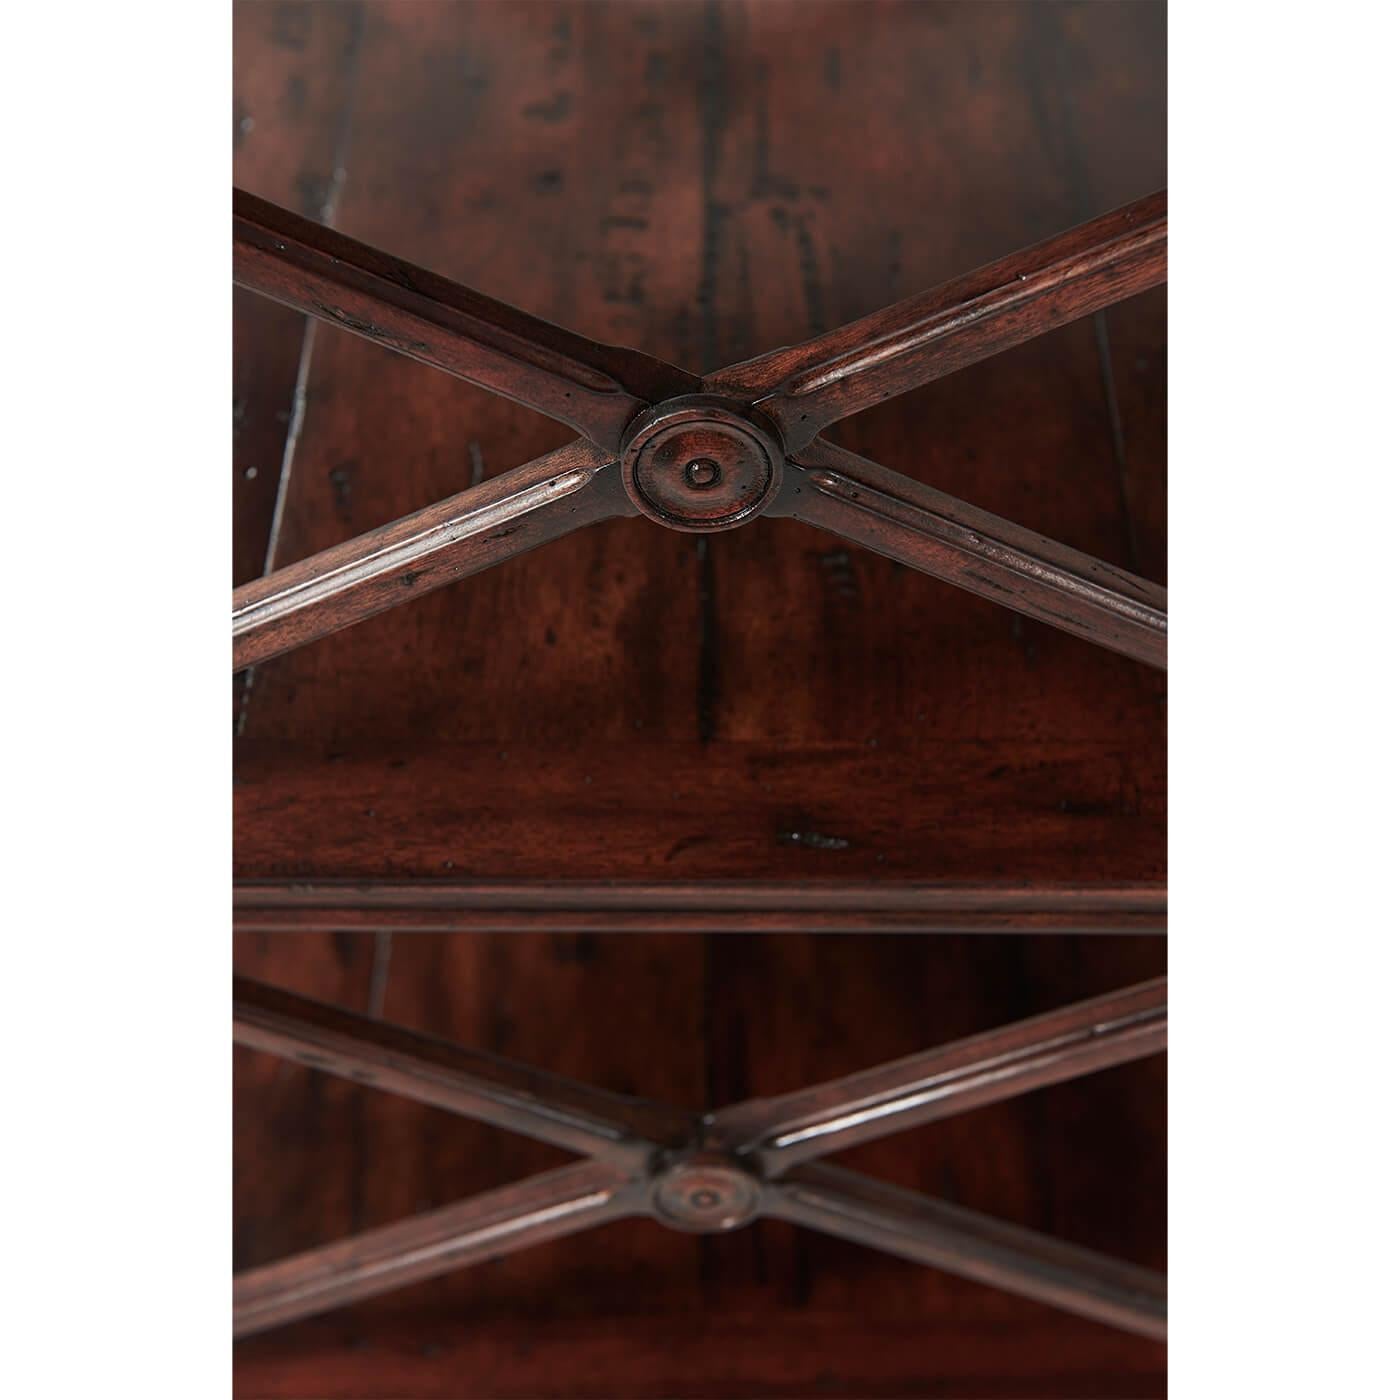 Une étagère à trois niveaux en bois de style provincial français vieilli, le plateau carré à trois quarts de galerie et les niveaux inférieurs avec des supports en 'X' sur les côtés, sur des pieds carrés chanfreinés. 

Dimensions : 22